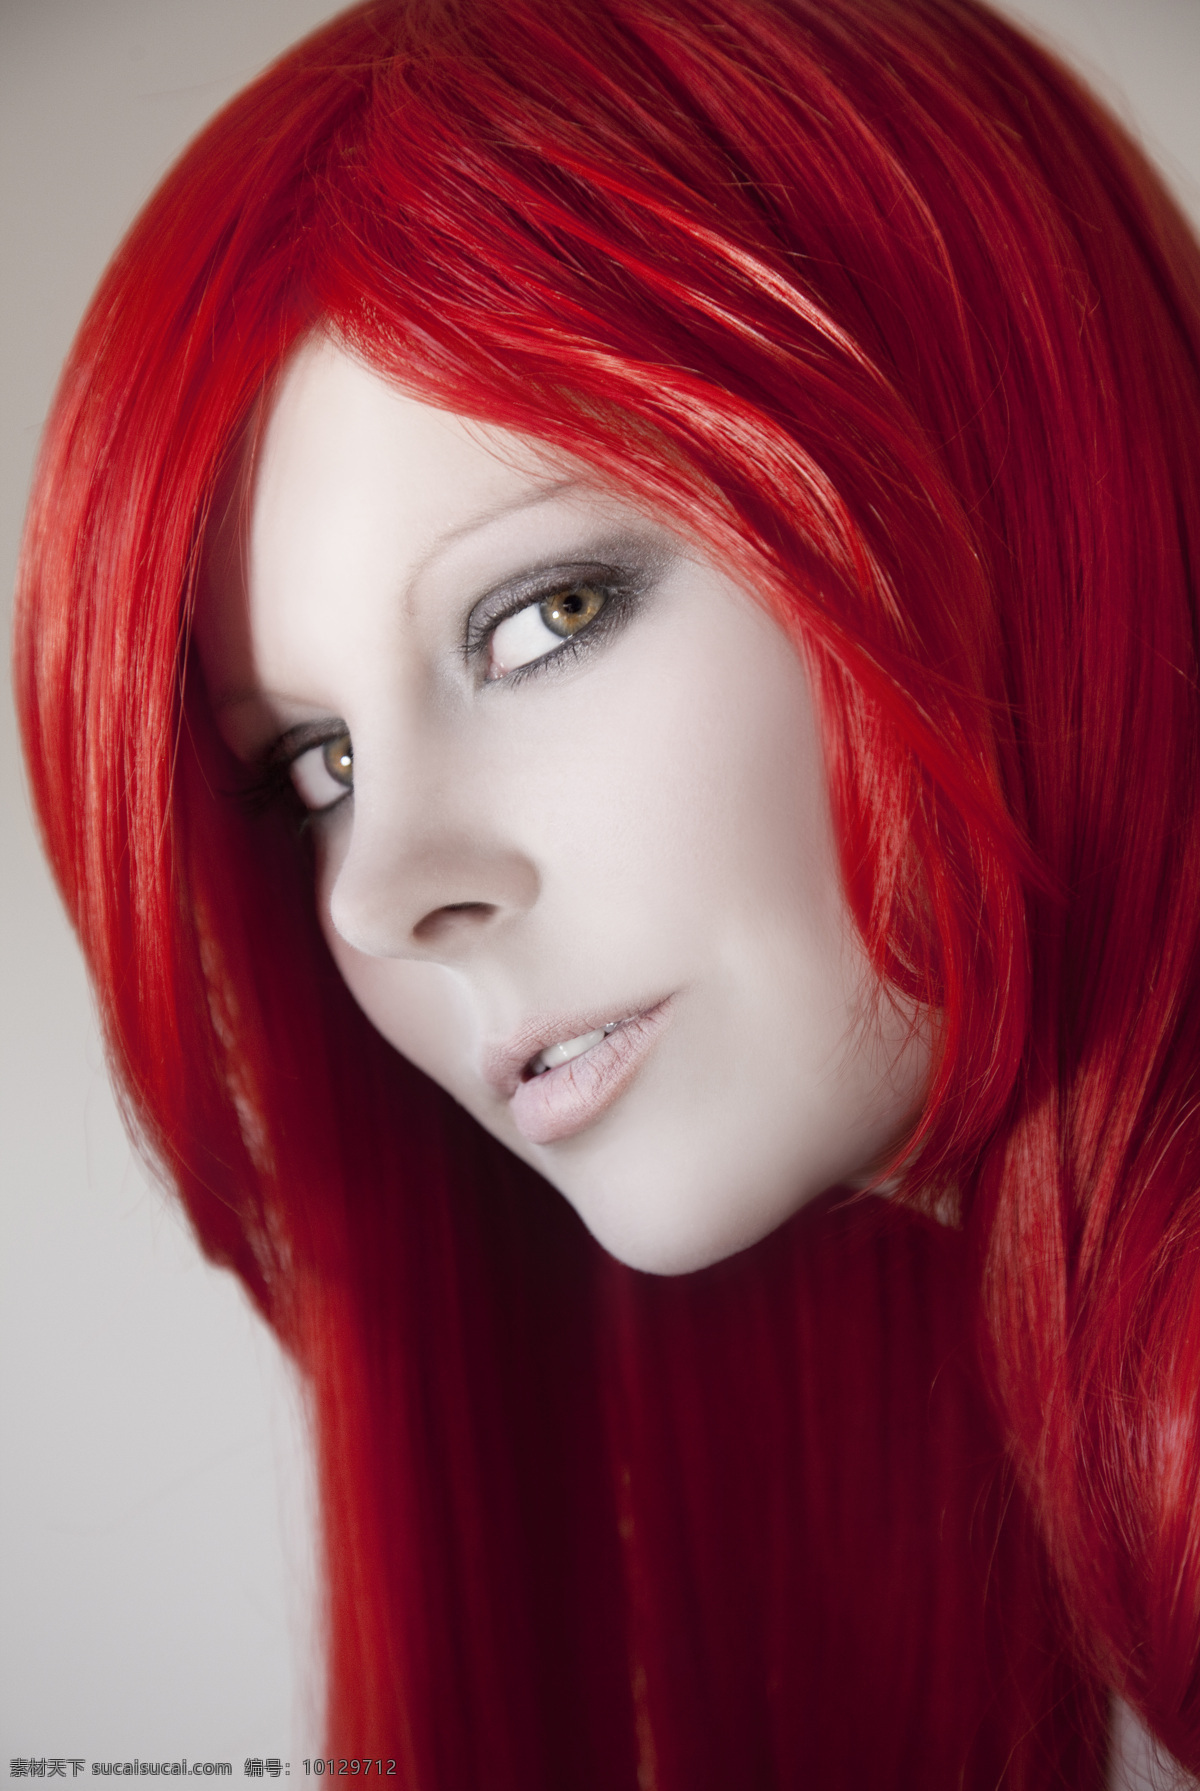 红色 头发 美女图片 人物 美女 红色头发 人物图片